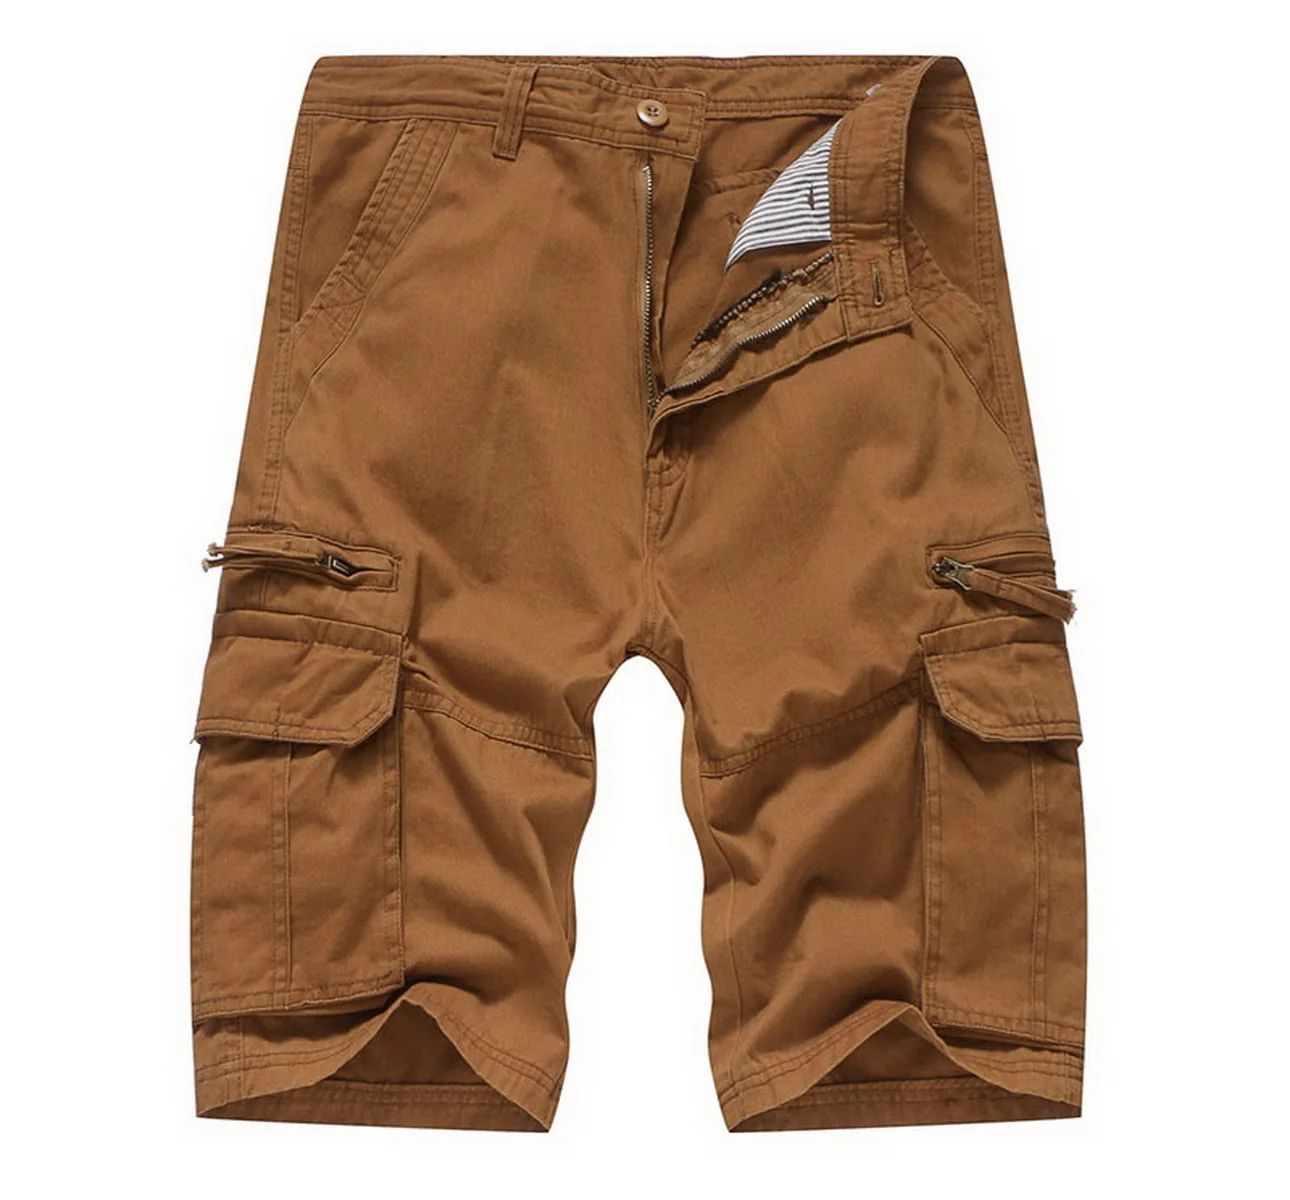 Mens Pants Online Sale 2019 Summer Cargo Shorts Men Camouflage Cotton ...